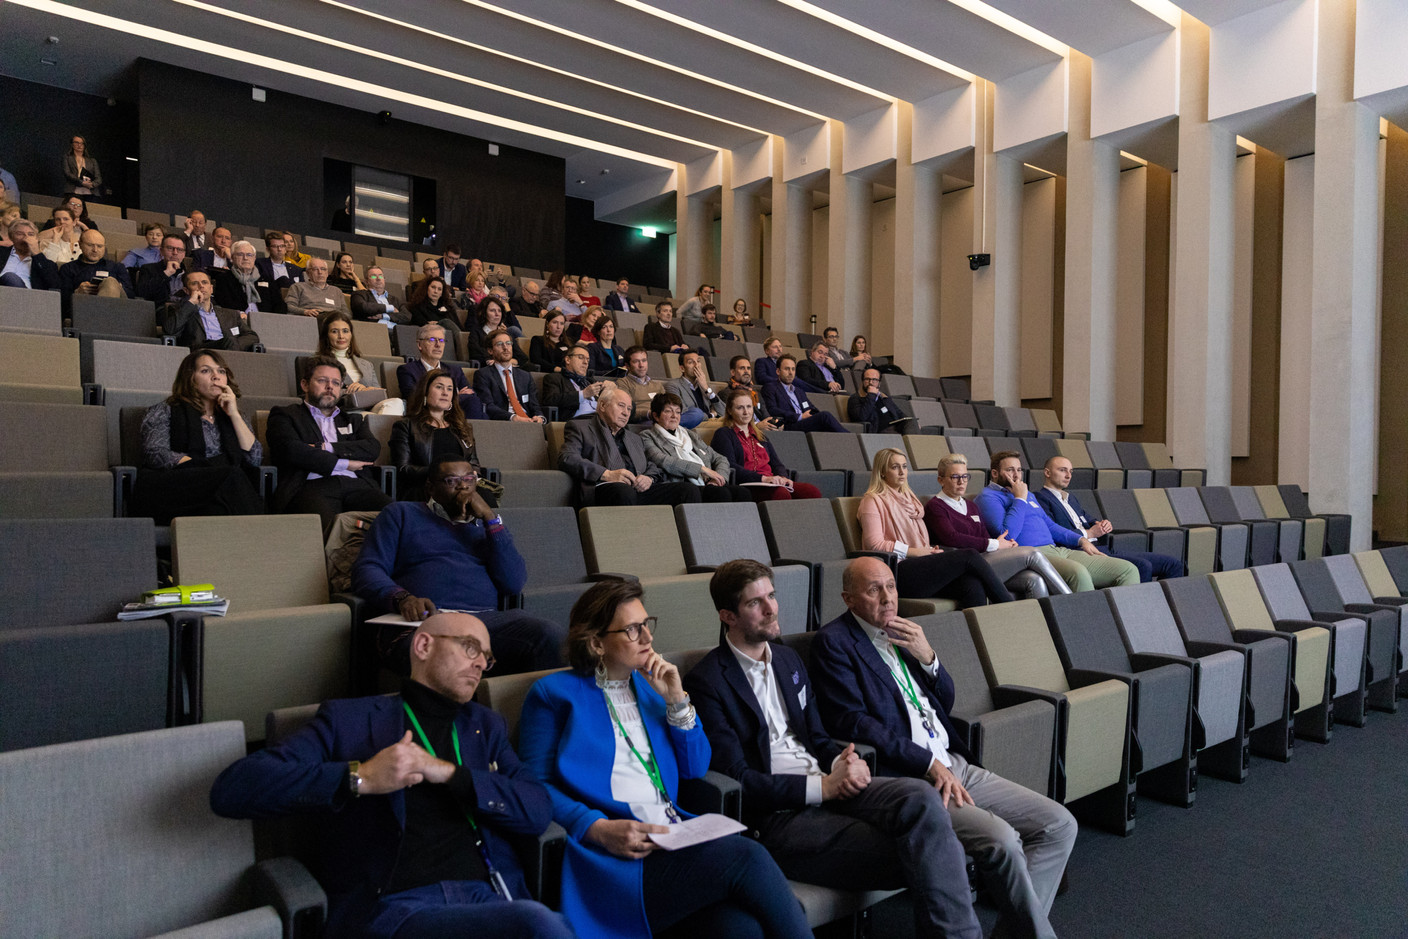 Un public composé d’entrepreneurs était réuni dans l’auditorium de Deloitte Luxembourg. (Photo: Romain Gamba/Maison Moderne)